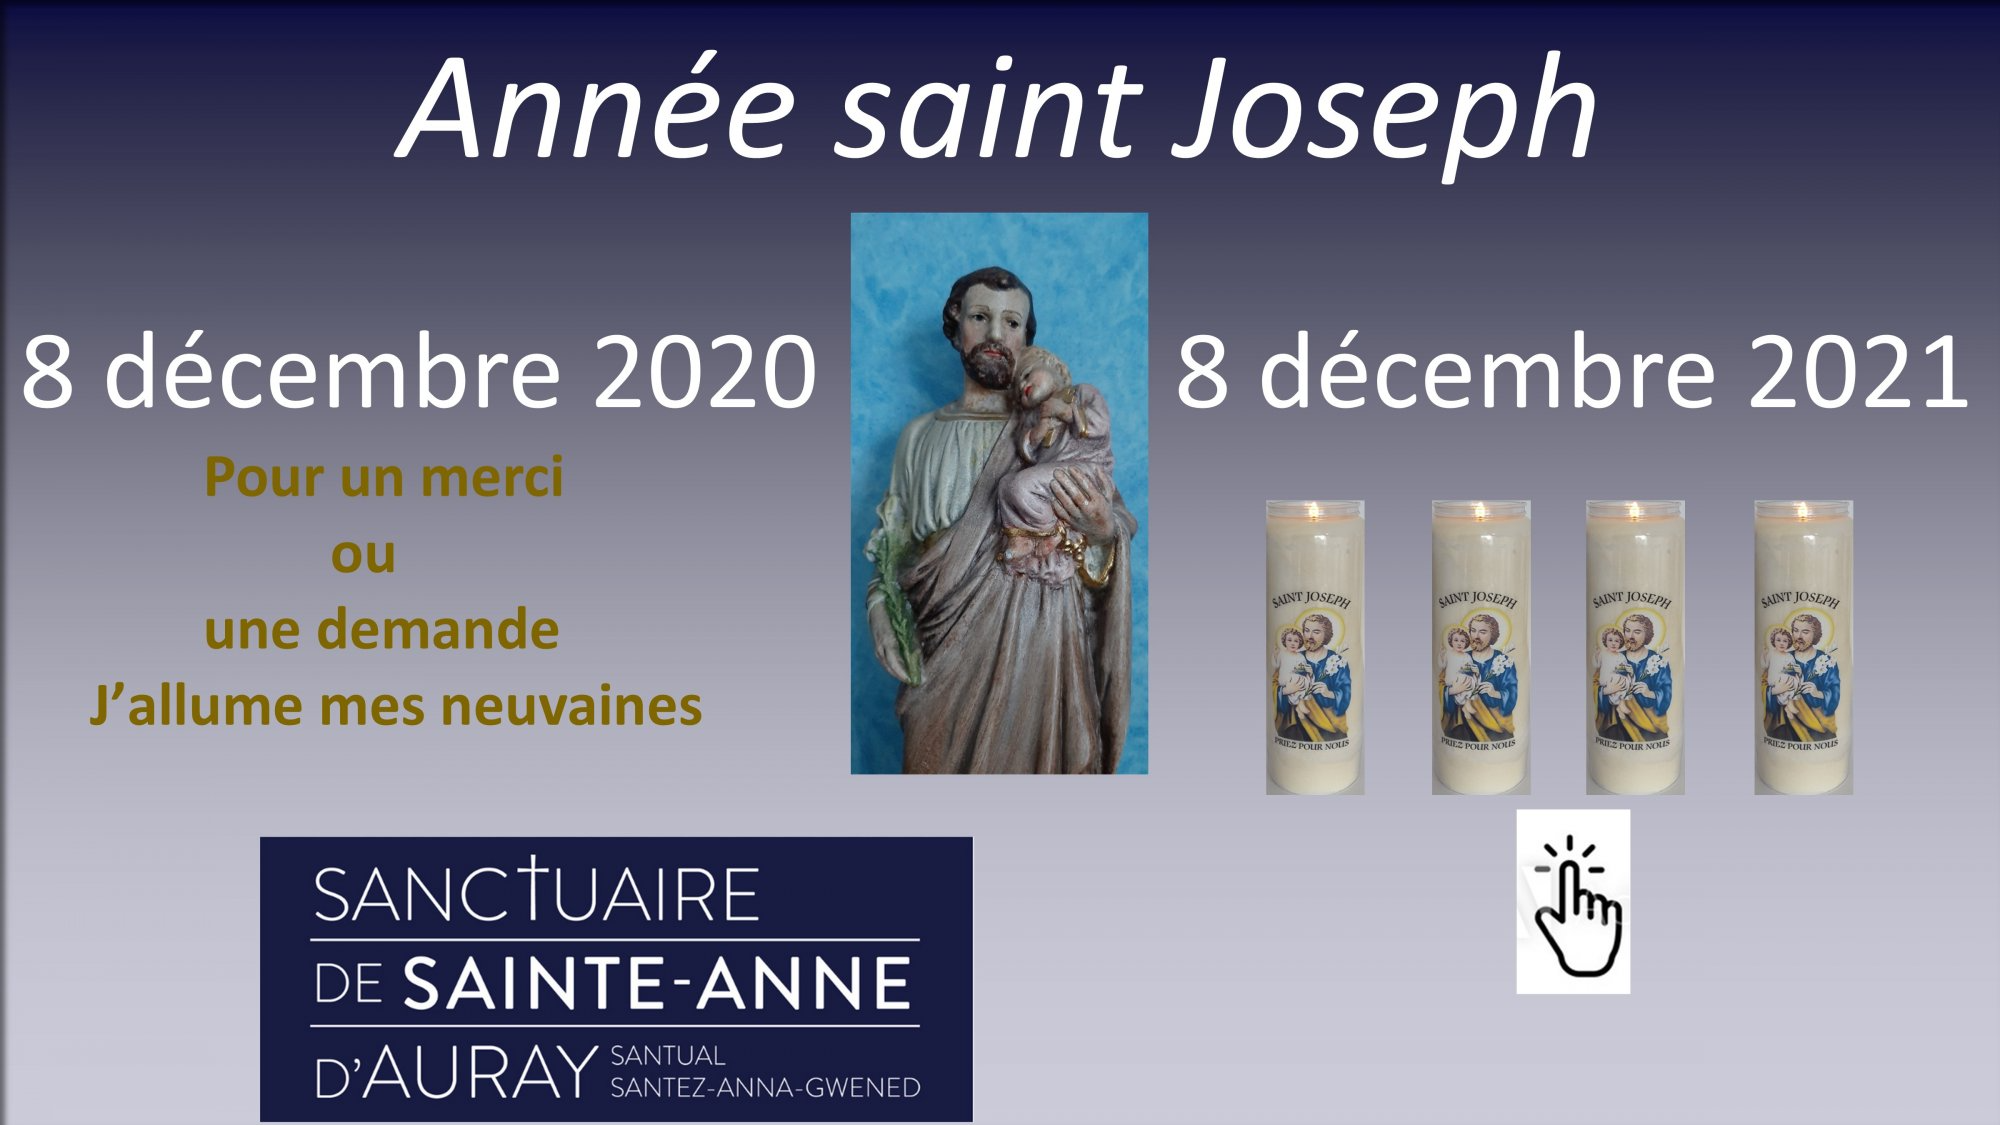 151626-8-decembre-2020-annee-saint-joseph-8-decembre-2021